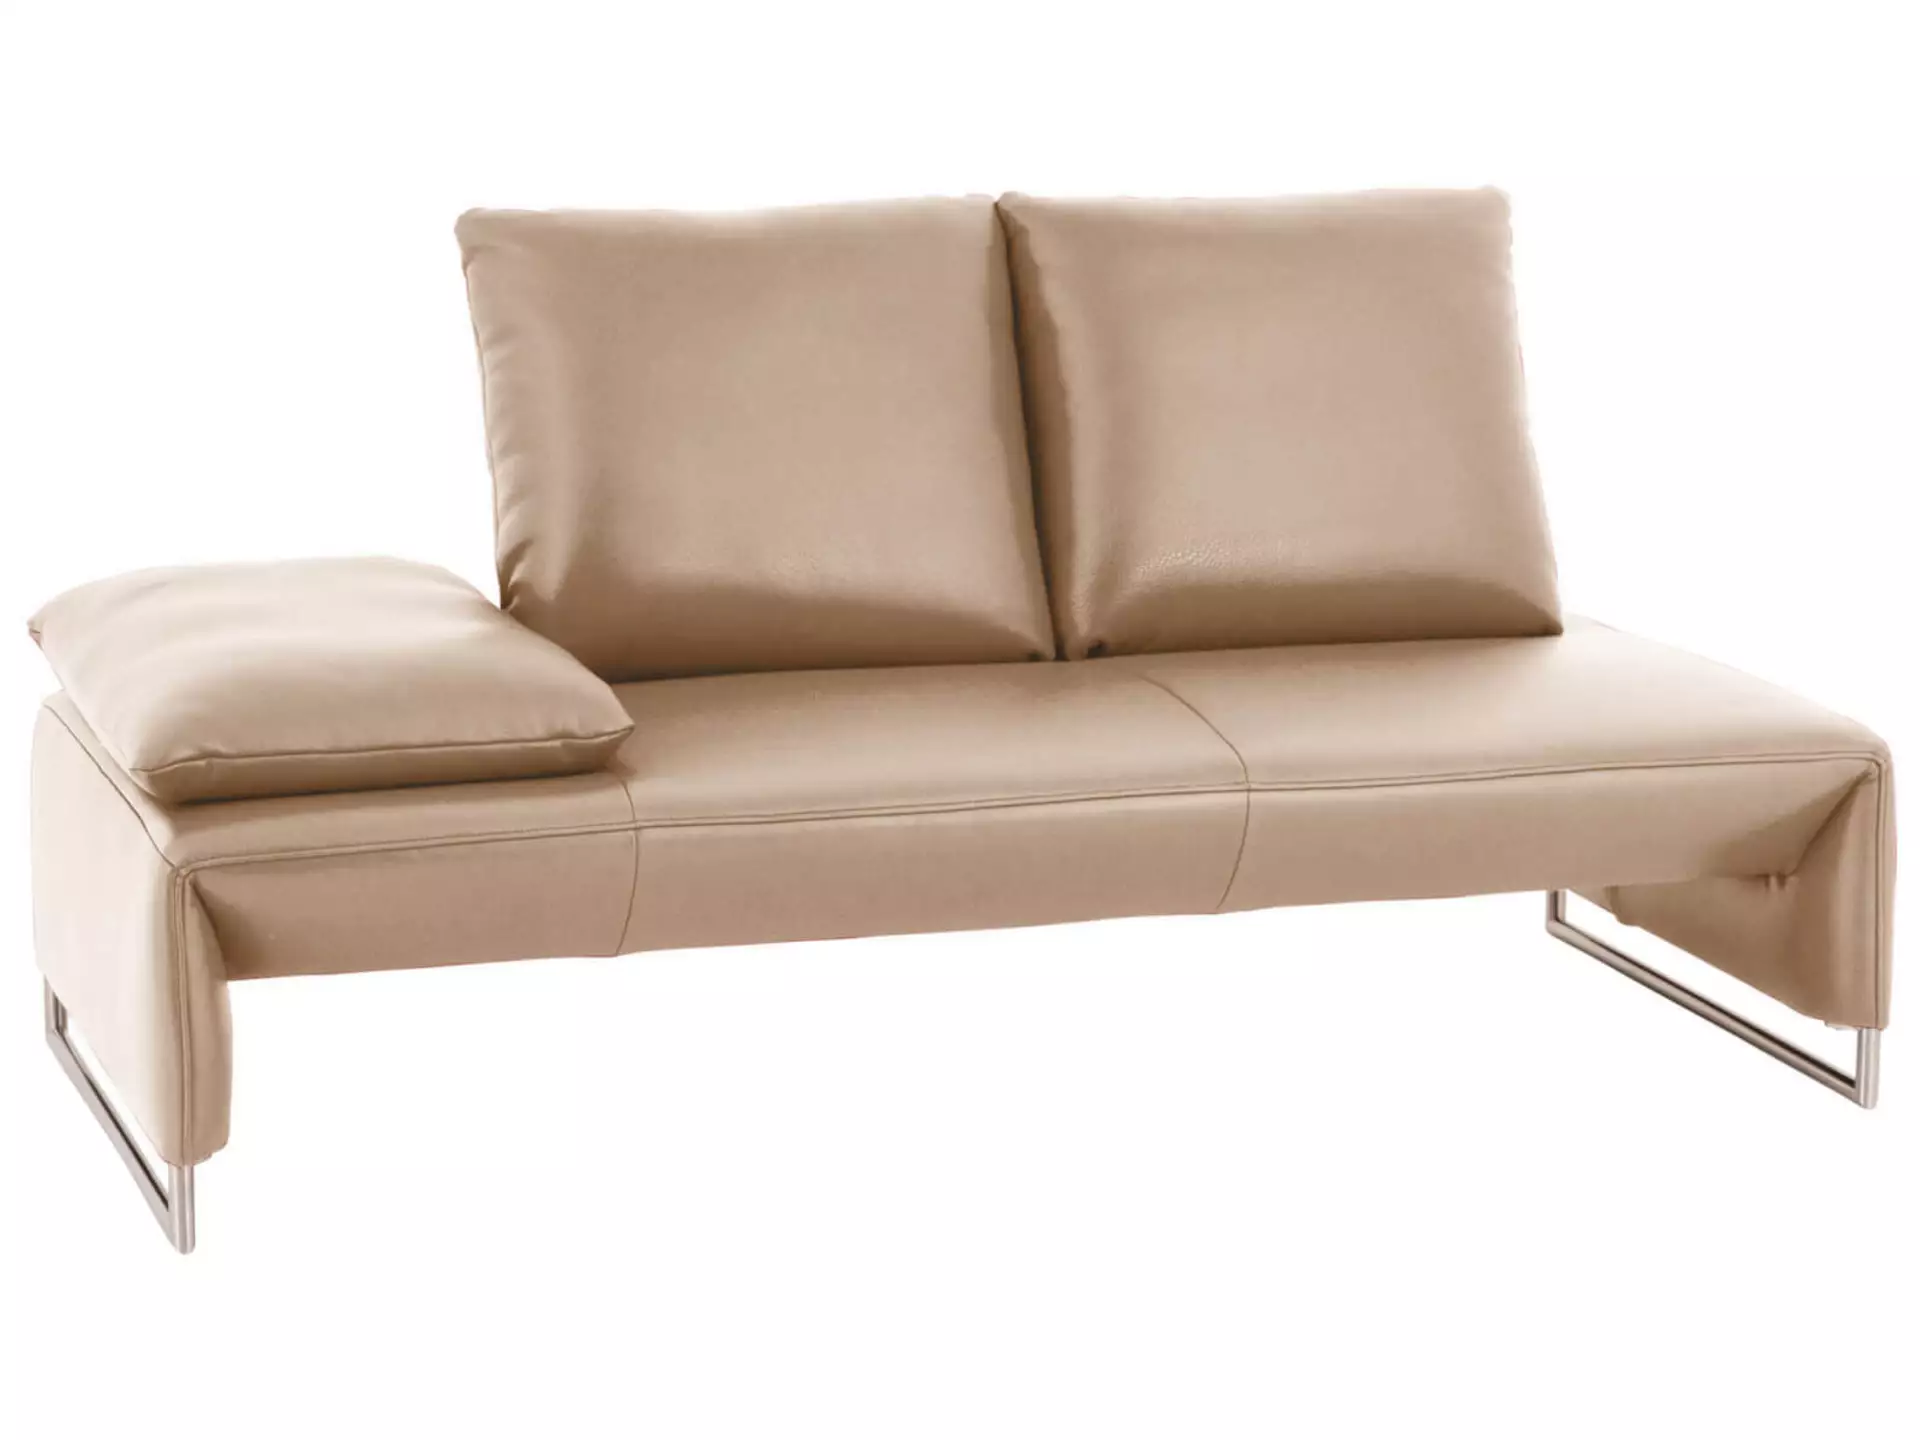 Sofa Ramano Basic B: 180 cm Koinor / Farbe: Jade / Material: Leder Basic